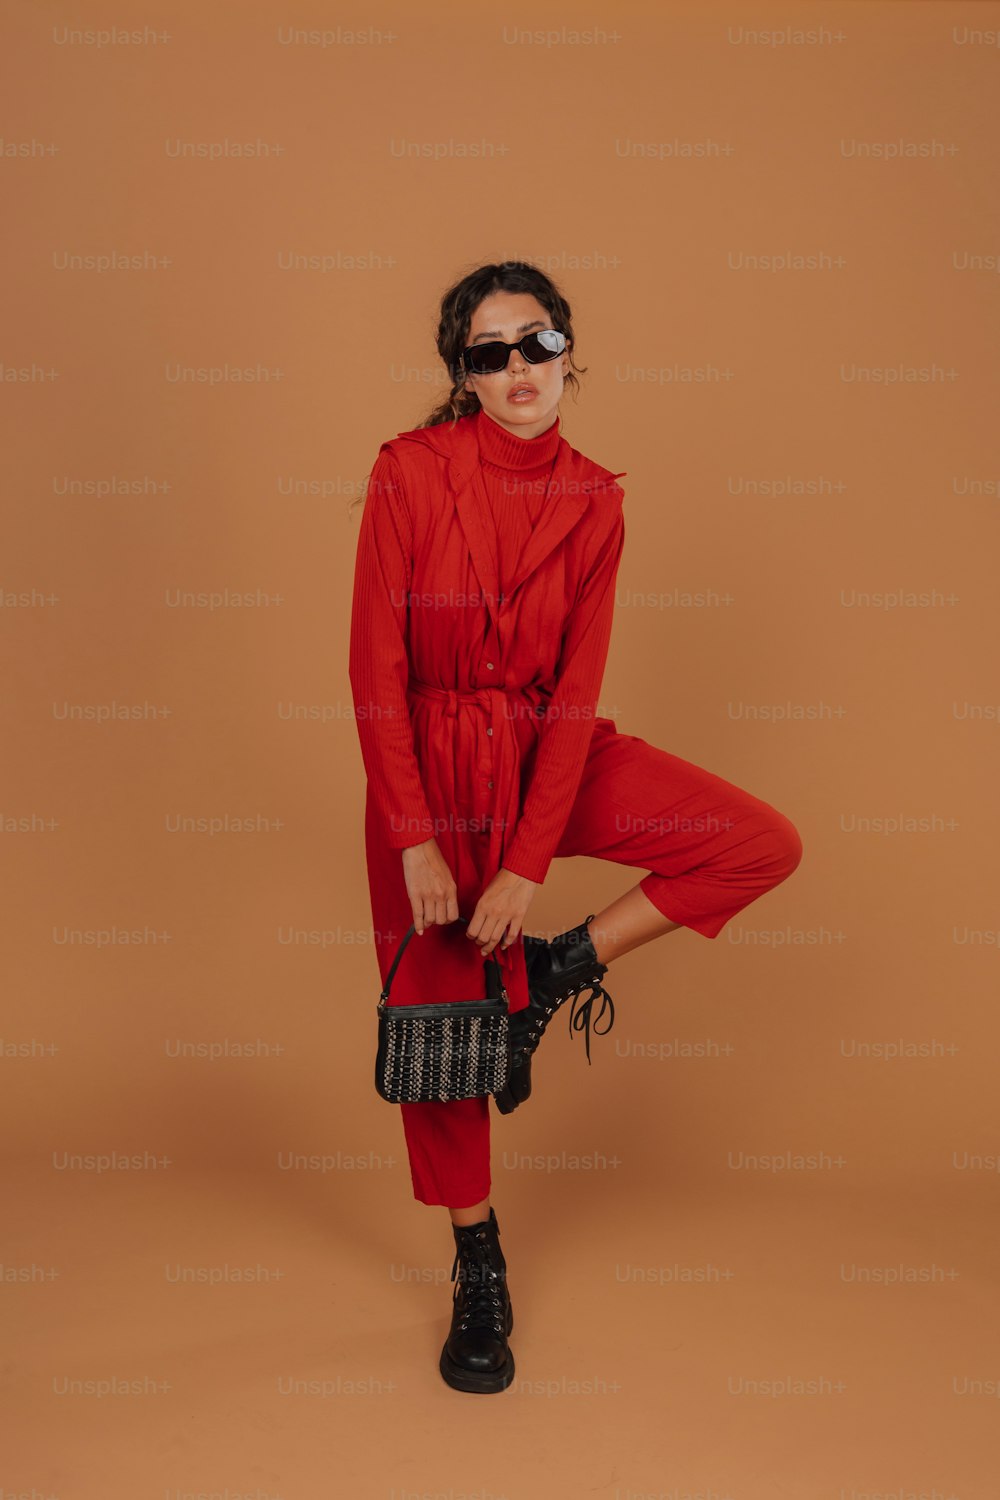 Una mujer con un traje rojo y gafas de sol